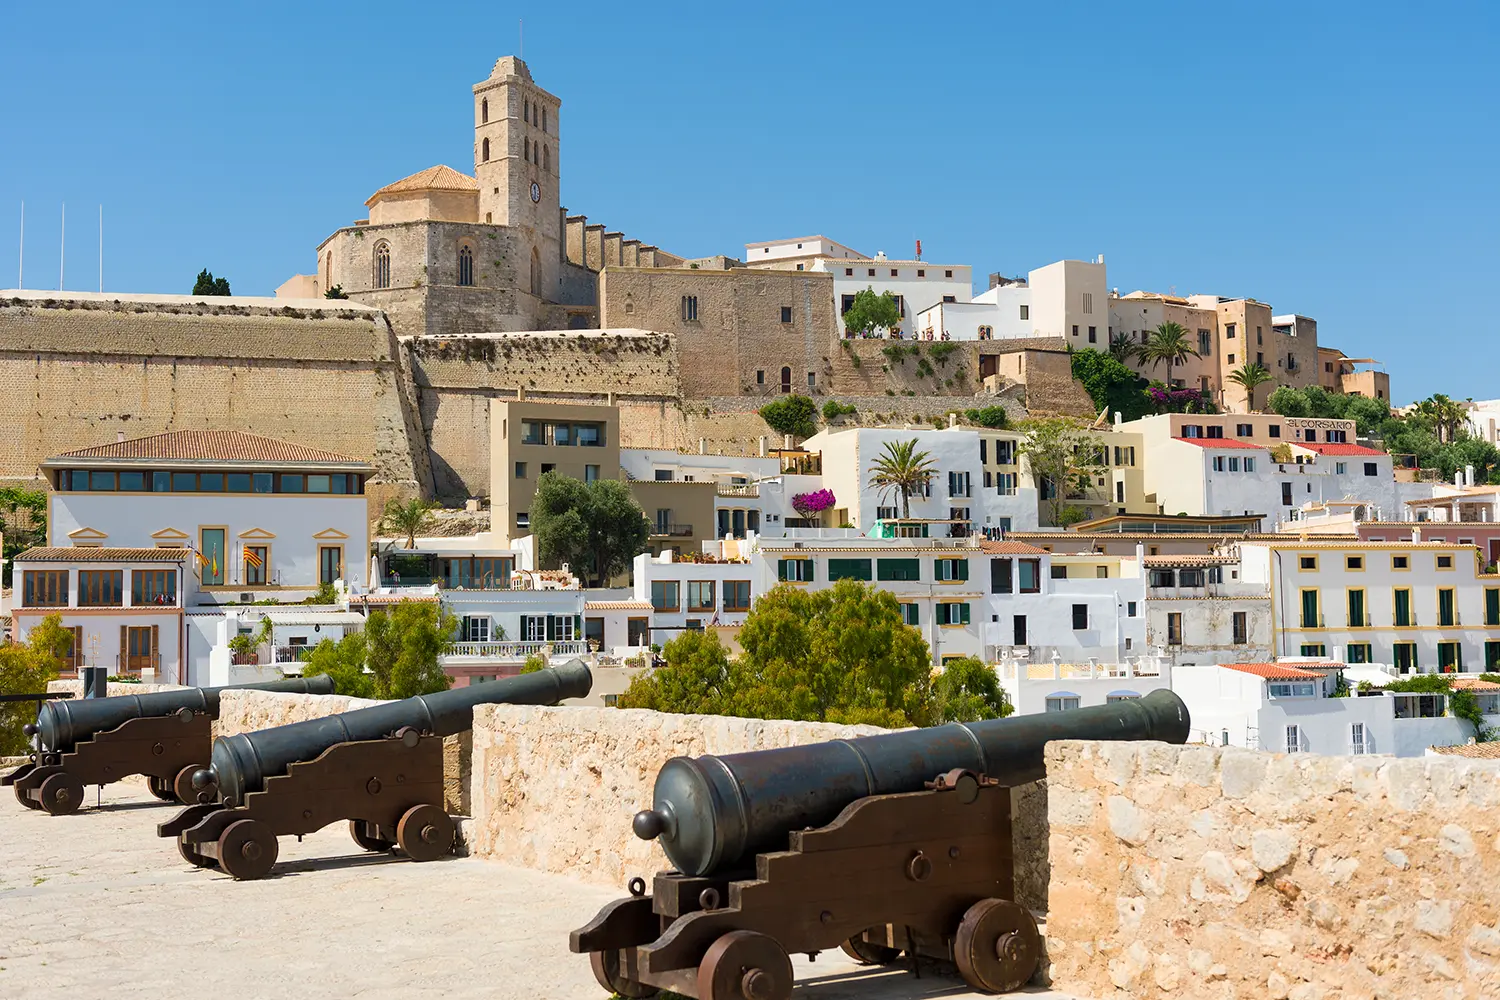 Ibiza old town area, known as Dalt Vila.